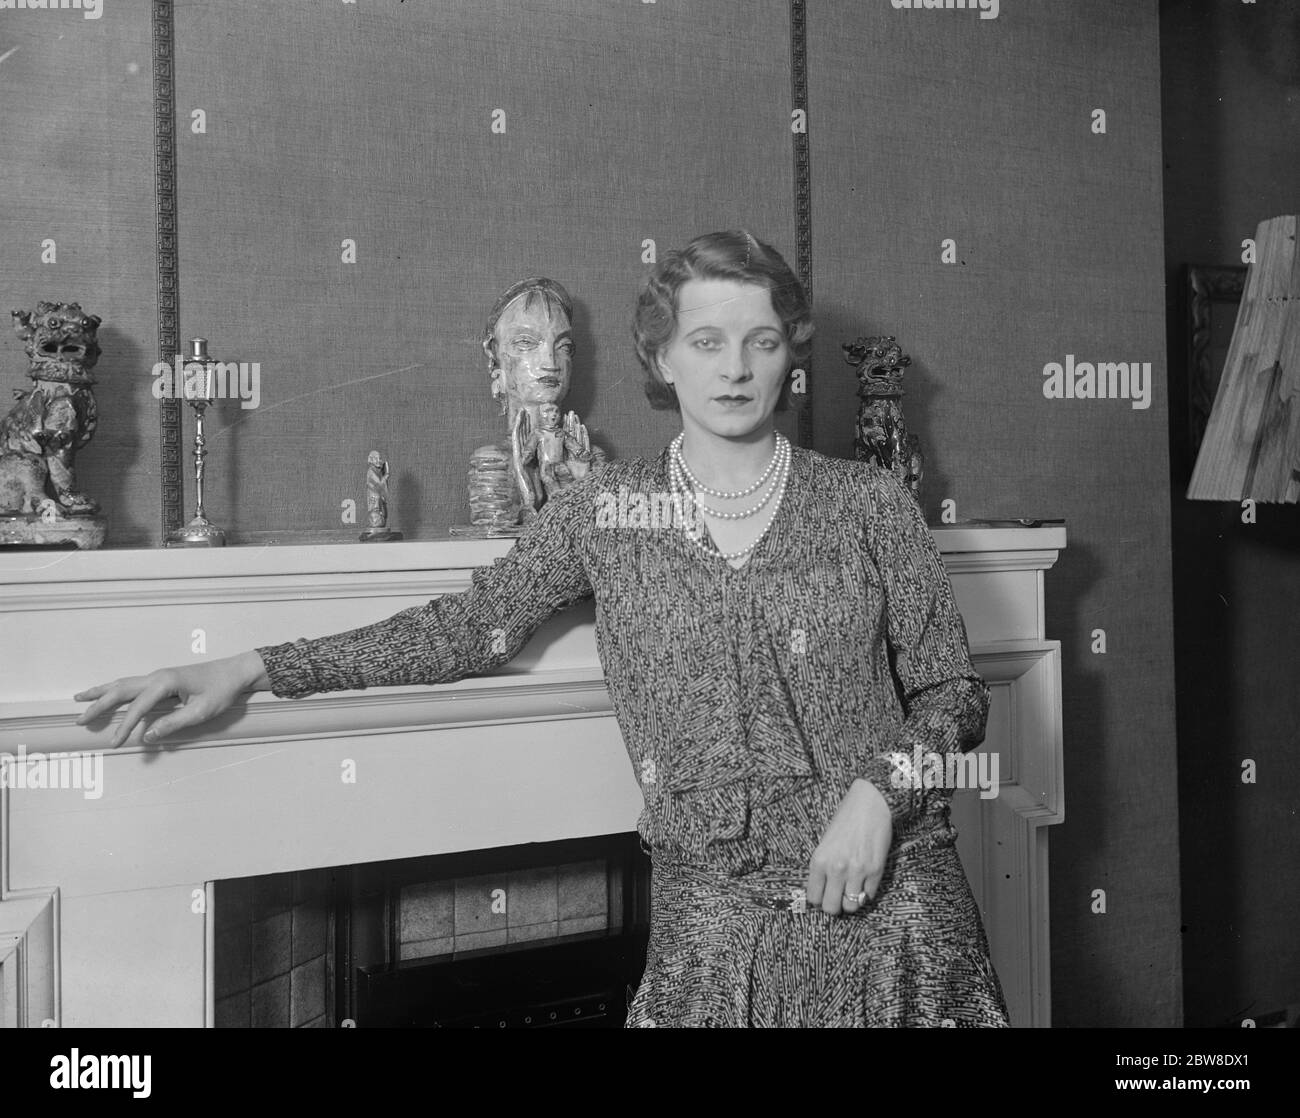 Le nouveau ' principal garçon ' de Drury Lane ' à la maison . Mlle Lilian Davies , la star de tant de pièces musicales réussies , photographiée à son domicile de Londres vendredi . Elle a été choisie pour être le principal garçon dans le Pantomime de la ' Belle au théâtre Drury Lane . 15 novembre 1929 Banque D'Images